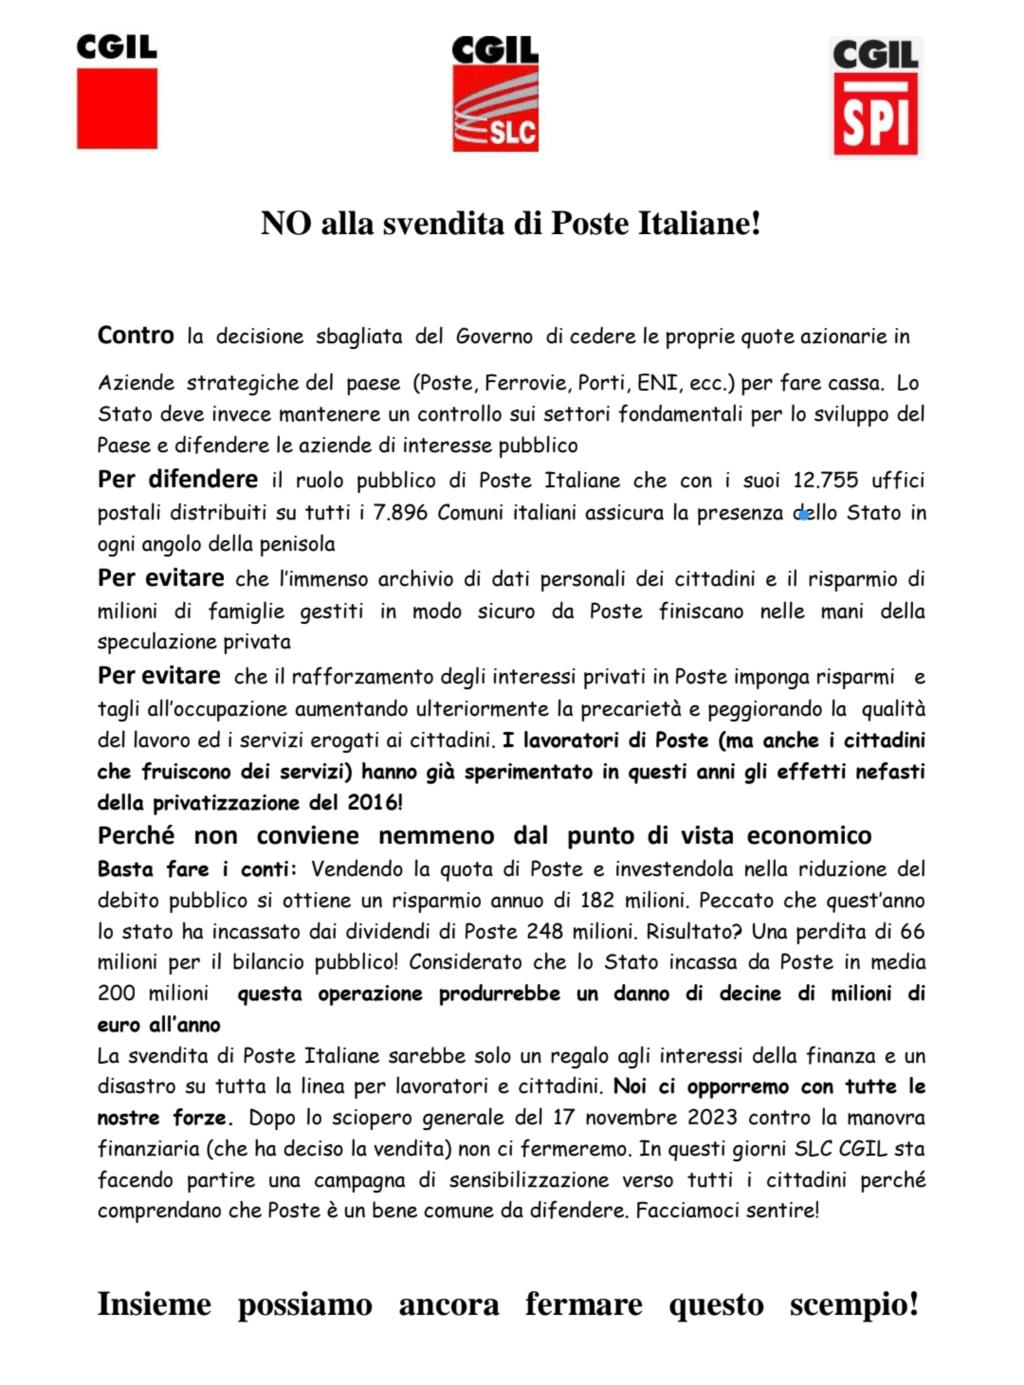 La Cgil contro la privatizzazione di Poste Italiane